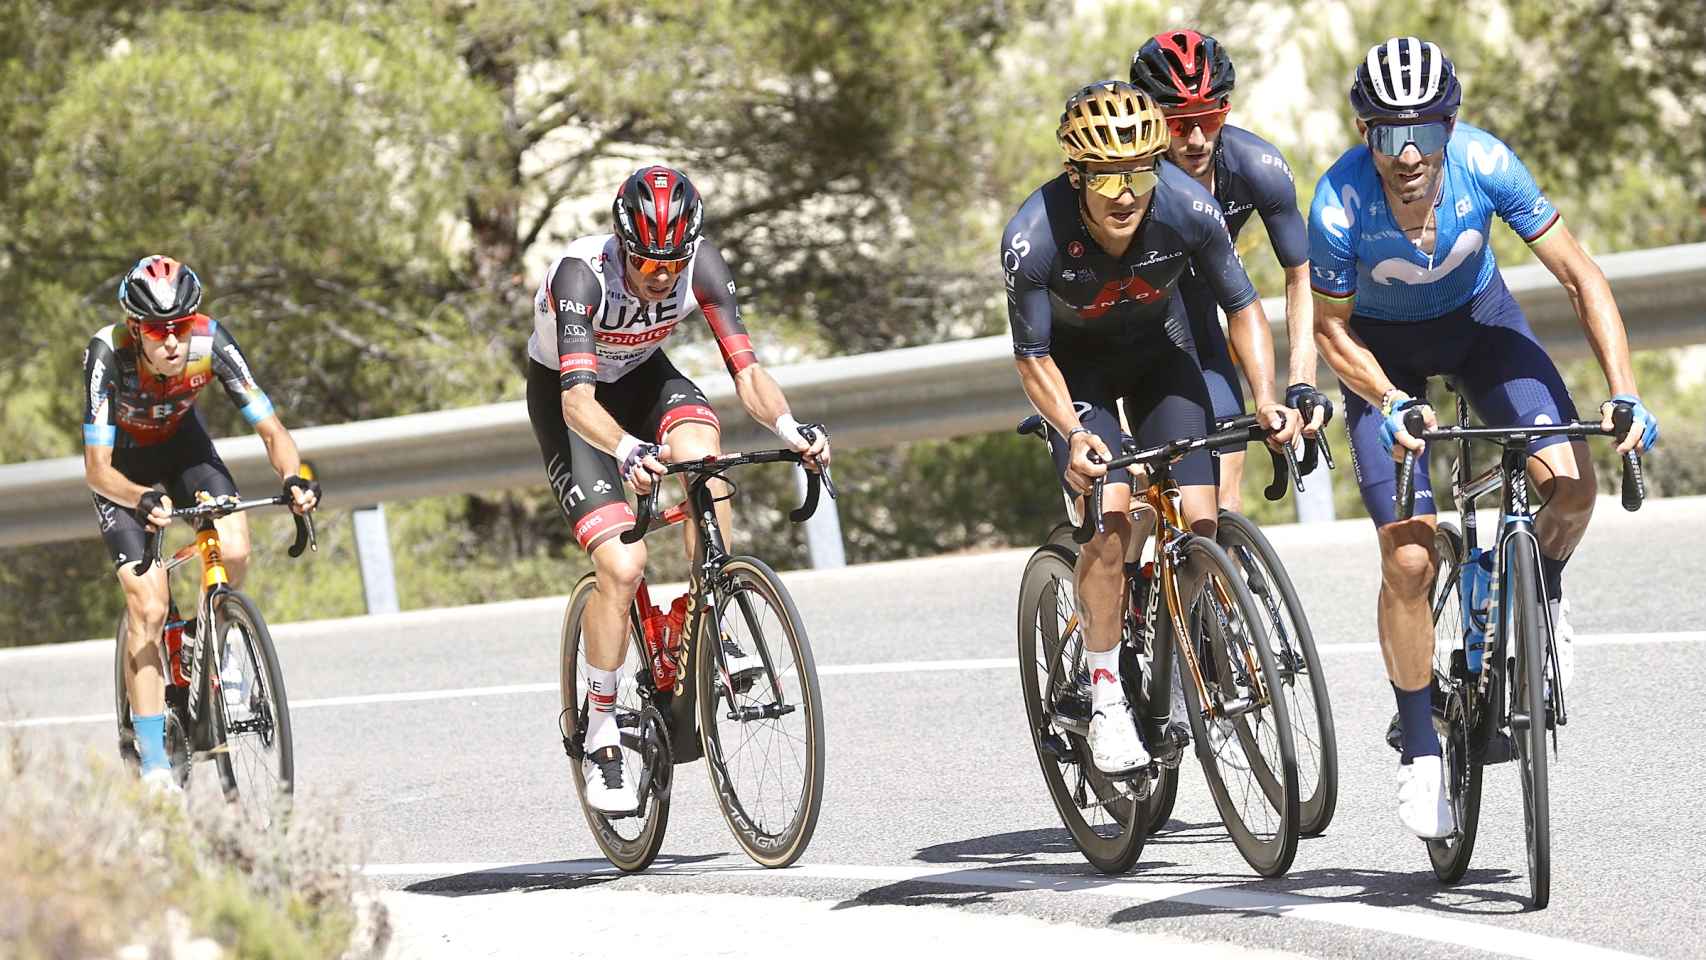 Alejandro Valverde lanza un ataque en La Vuelta 2021